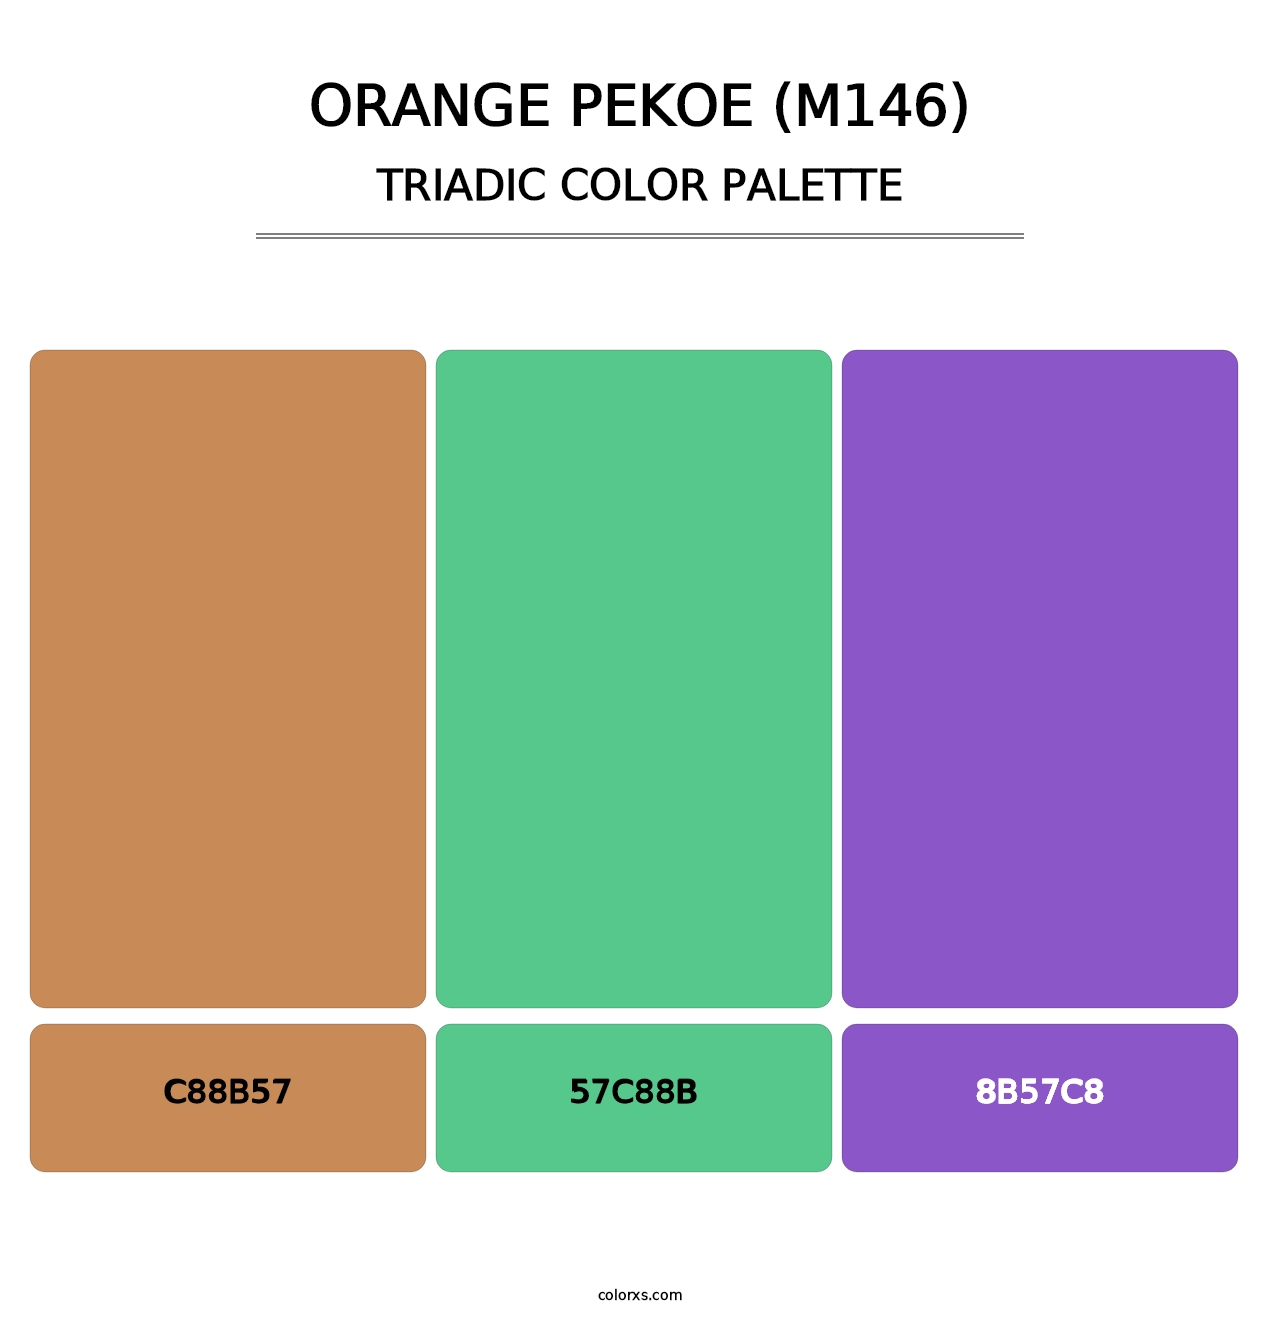 Orange Pekoe (M146) - Triadic Color Palette